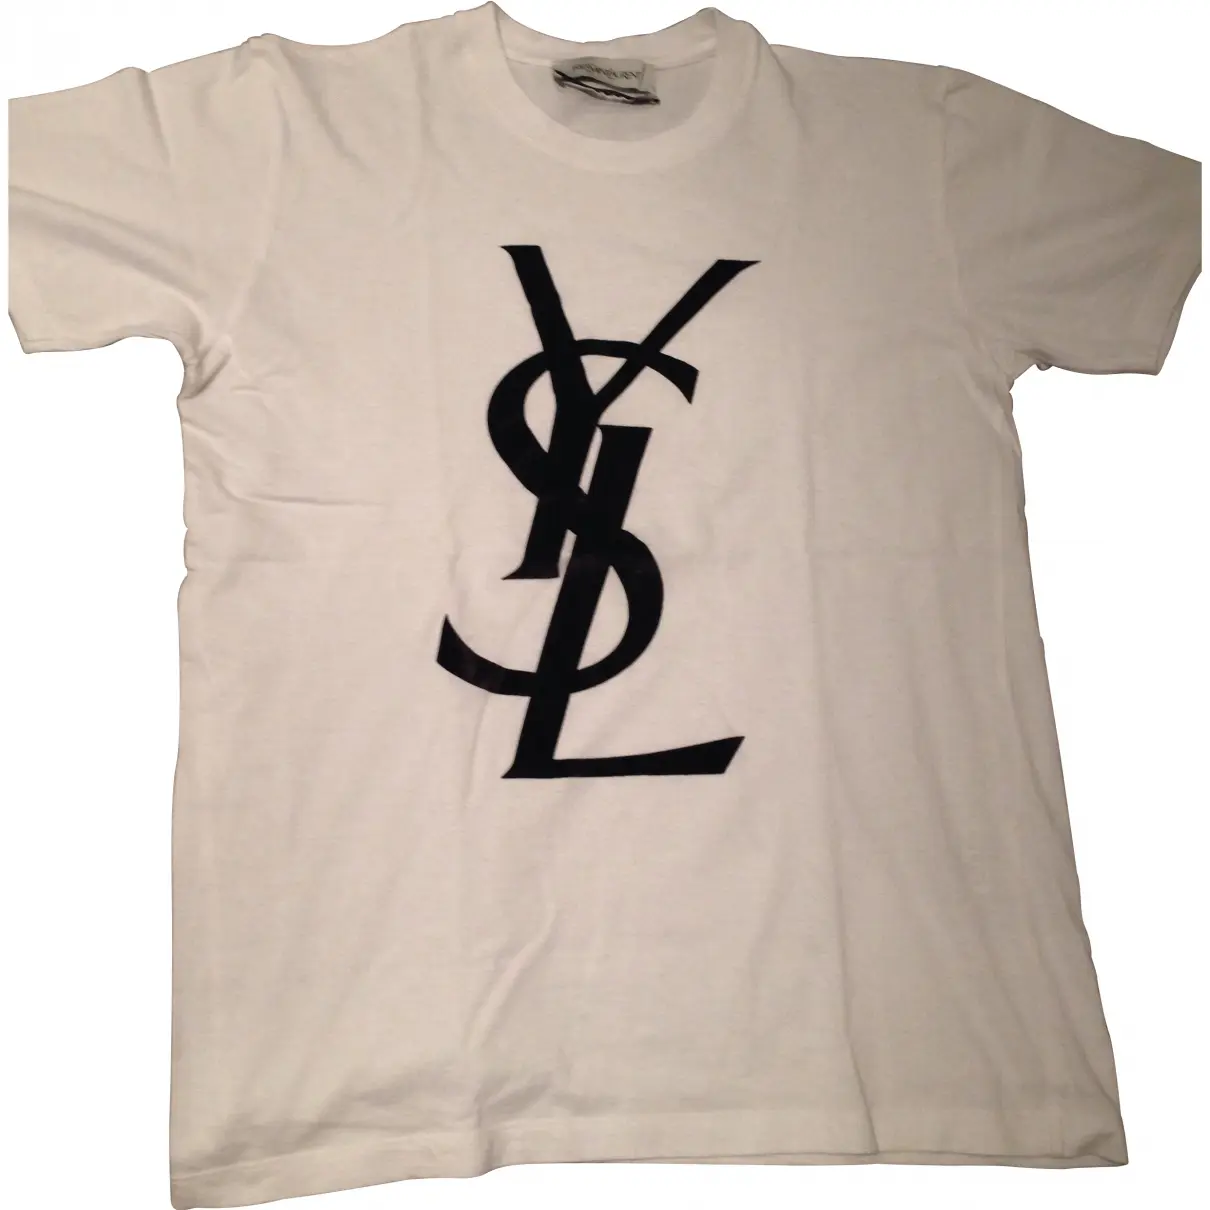 WHITE YSL T-SHIRT Yves Saint Laurent